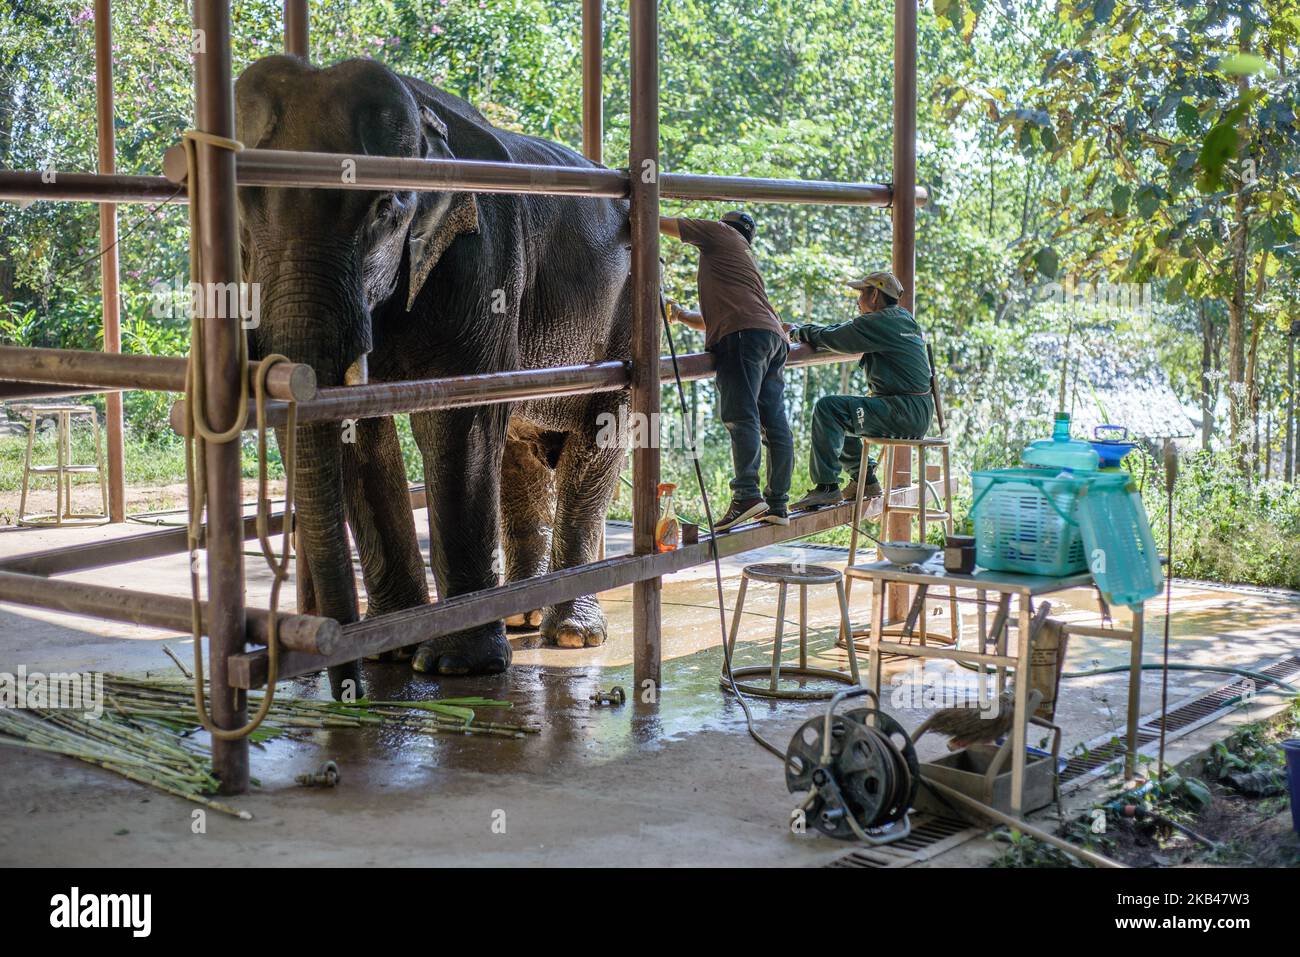 Im Dezember 2018 wird ein Elefant im Krankenhaus des Elephant Conservation Centre, Sayaboury, Laos, behandelt. Laos war in der Vergangenheit als ‘das Land einer Million Elefanten’ bekannt, heute zählt die Elefantenpopulation im Land rund 800 Individuen. Die Hälfte von ihnen besteht aus gefangenen Elefanten, und ihre Zahl ist rückläufig; die Besitzer sind nicht an der Zucht von Tieren interessiert (die Kuh benötigt während ihrer Schwangerschaft und Stillzeit mindestens vier Jahre arbeitszeit), der illegale Handel nach China und anderen Nachbarländern geht weiter. Vor diesem Hintergrund der Elefantenschutzcent Stockfoto